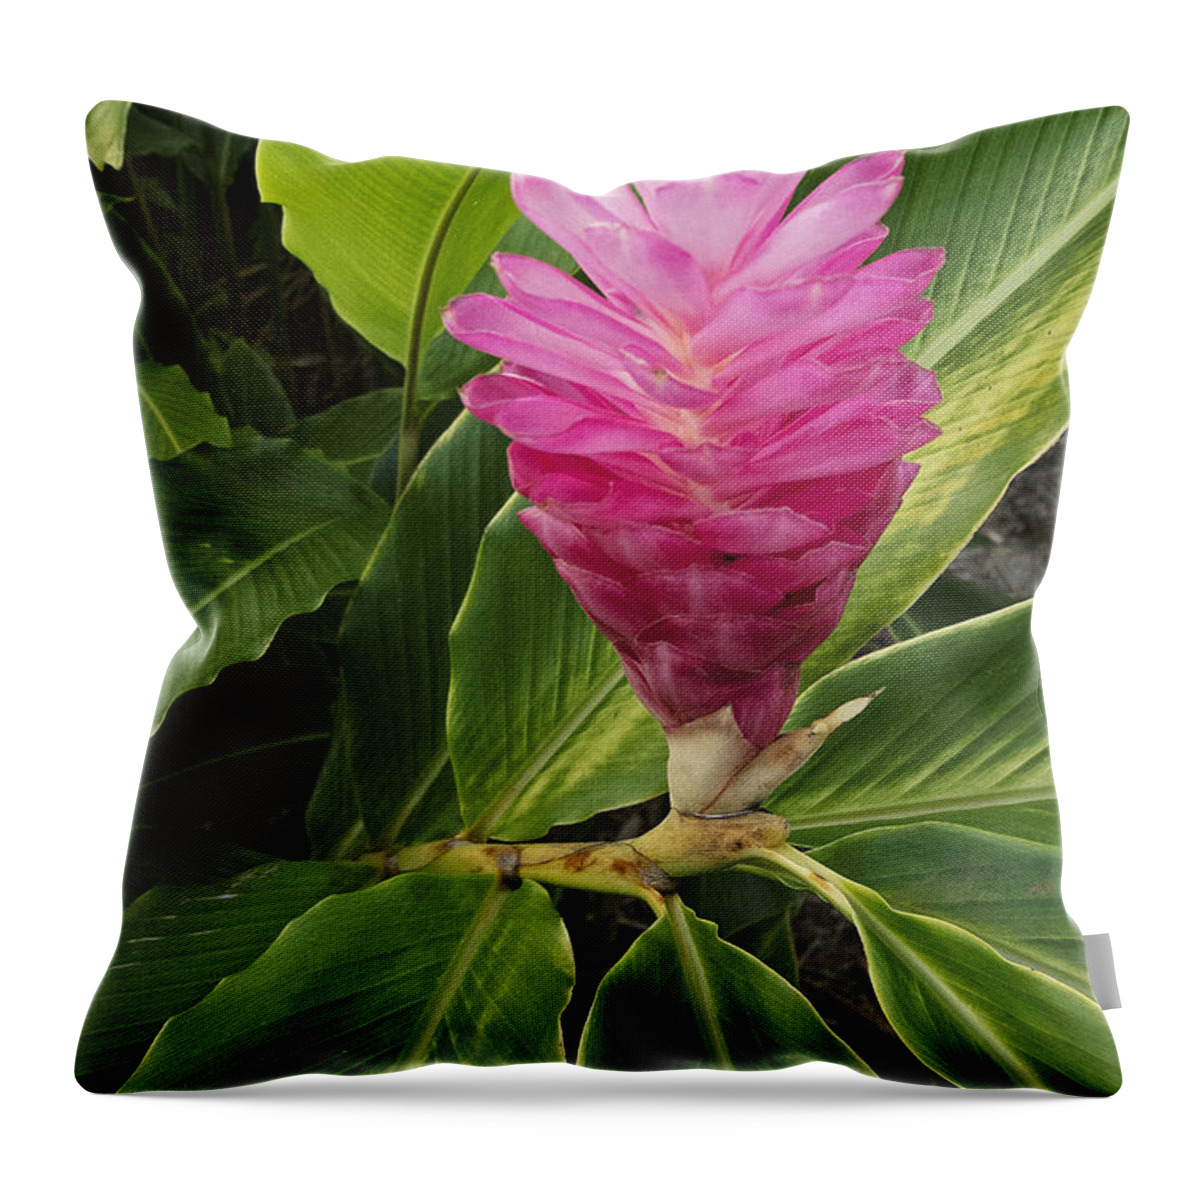 Outdoors Throw Pillow featuring the photograph Hawaiin Flora I by Doug Davidson